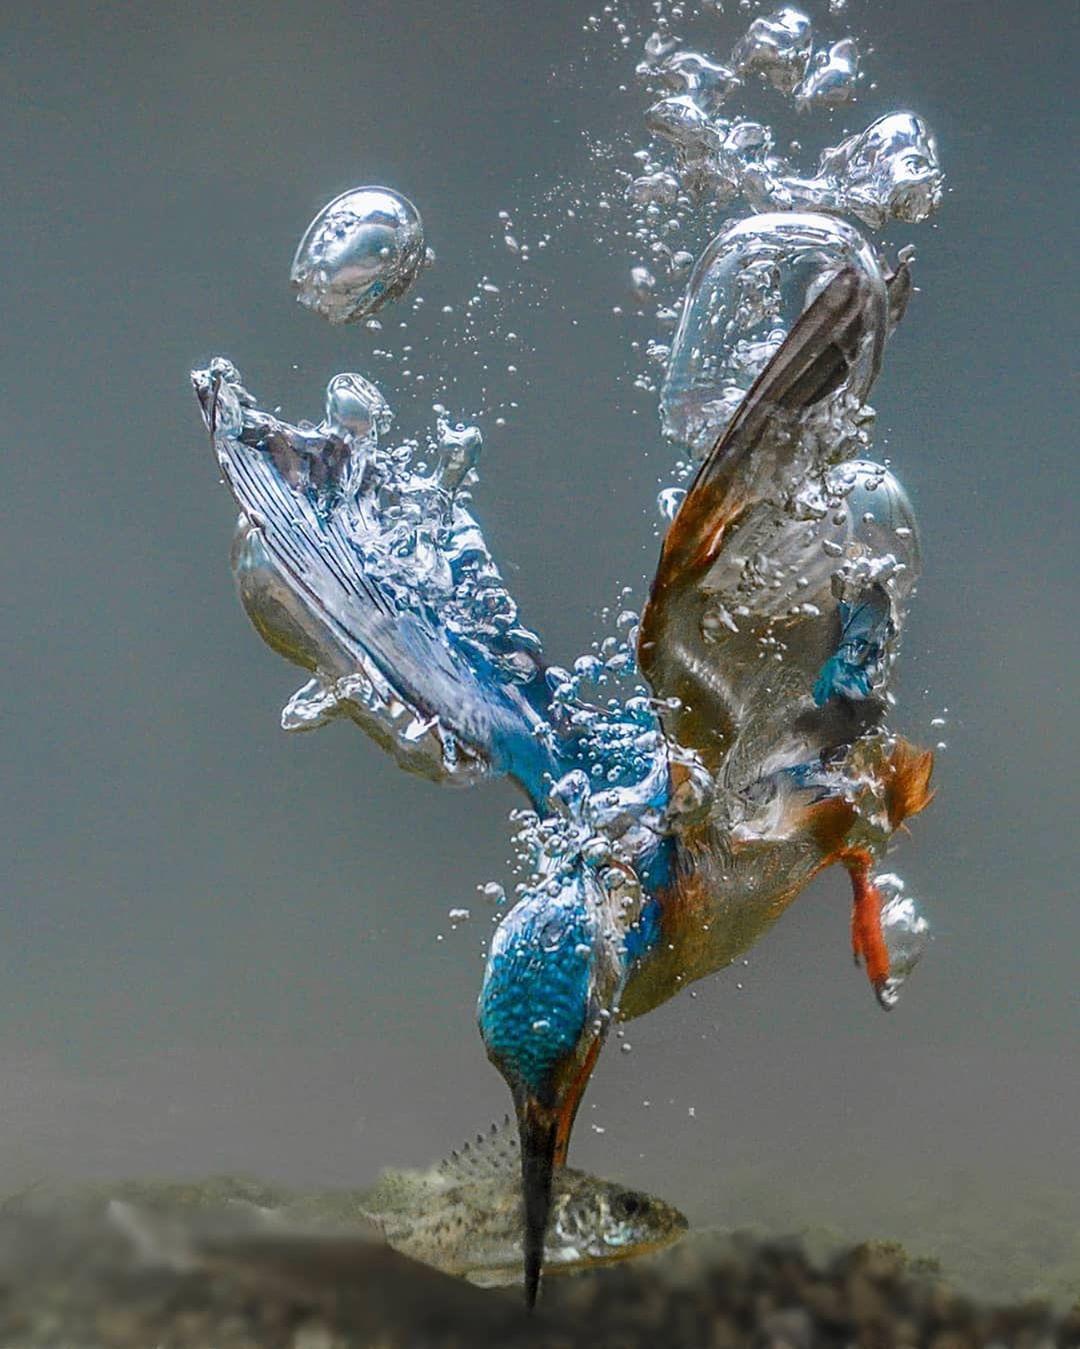  水中捕鱼的翠鸟，来自摄影师Tariq La Brijn。 